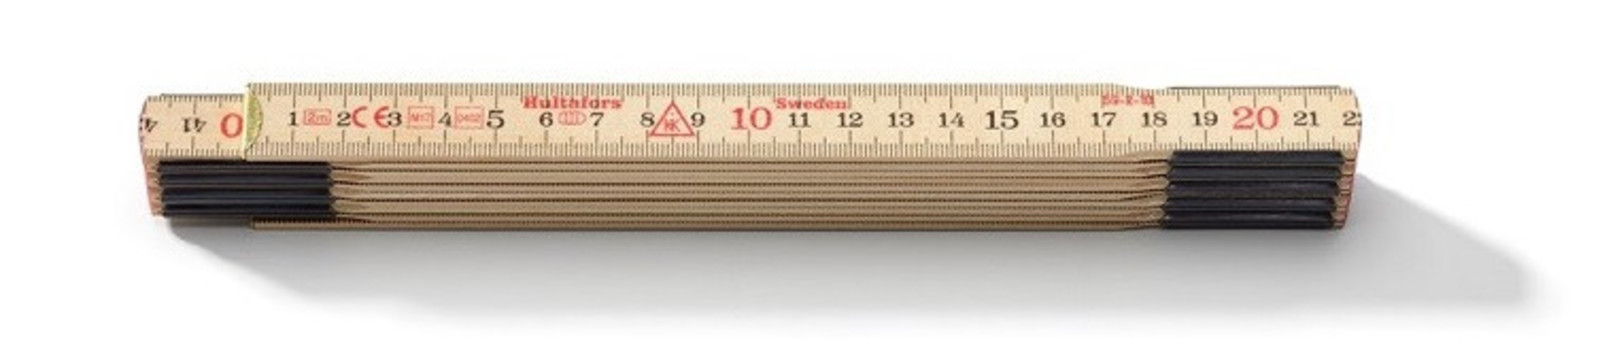 Drevený skladací meter Hultafors 2m (10 lamien) - veľkosť: 10 lamiel